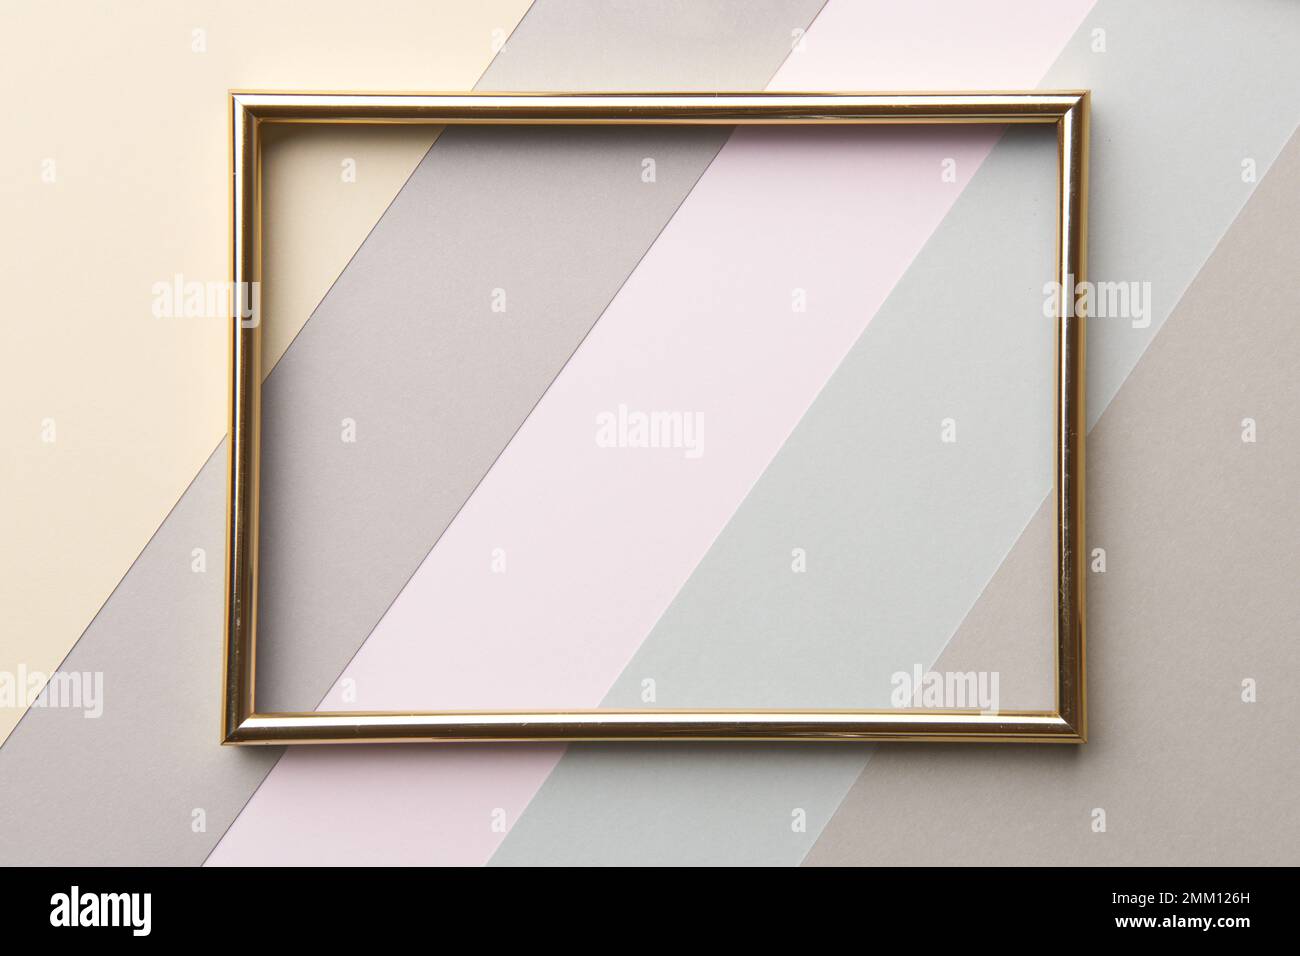 Abstrakte Pastelltöne und gedämpfte Farbtöne Papierstruktur minimalistischer flacher Hintergrund. Minimale Zusammensetzung geometrischer Formen und Linien mit leerem Bilderrahmen Stockfoto